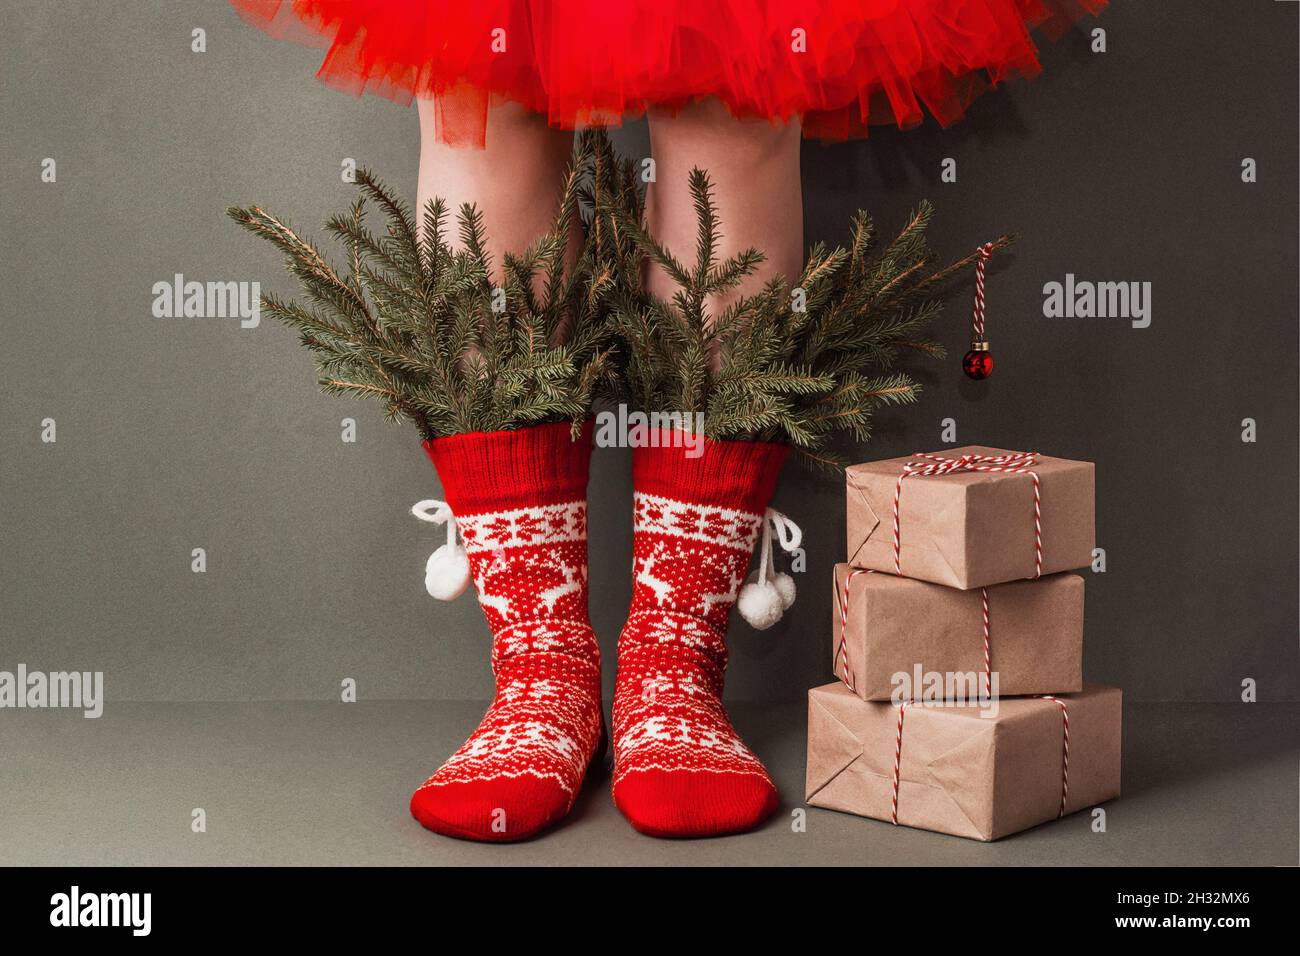 Jambes de femme en chaussettes rouges en laine avec ornements, branches de sapin et cadeaux de Noël sur fond vert.Joyeux Noël ou du nouvel an, cadeau créatif Banque D'Images